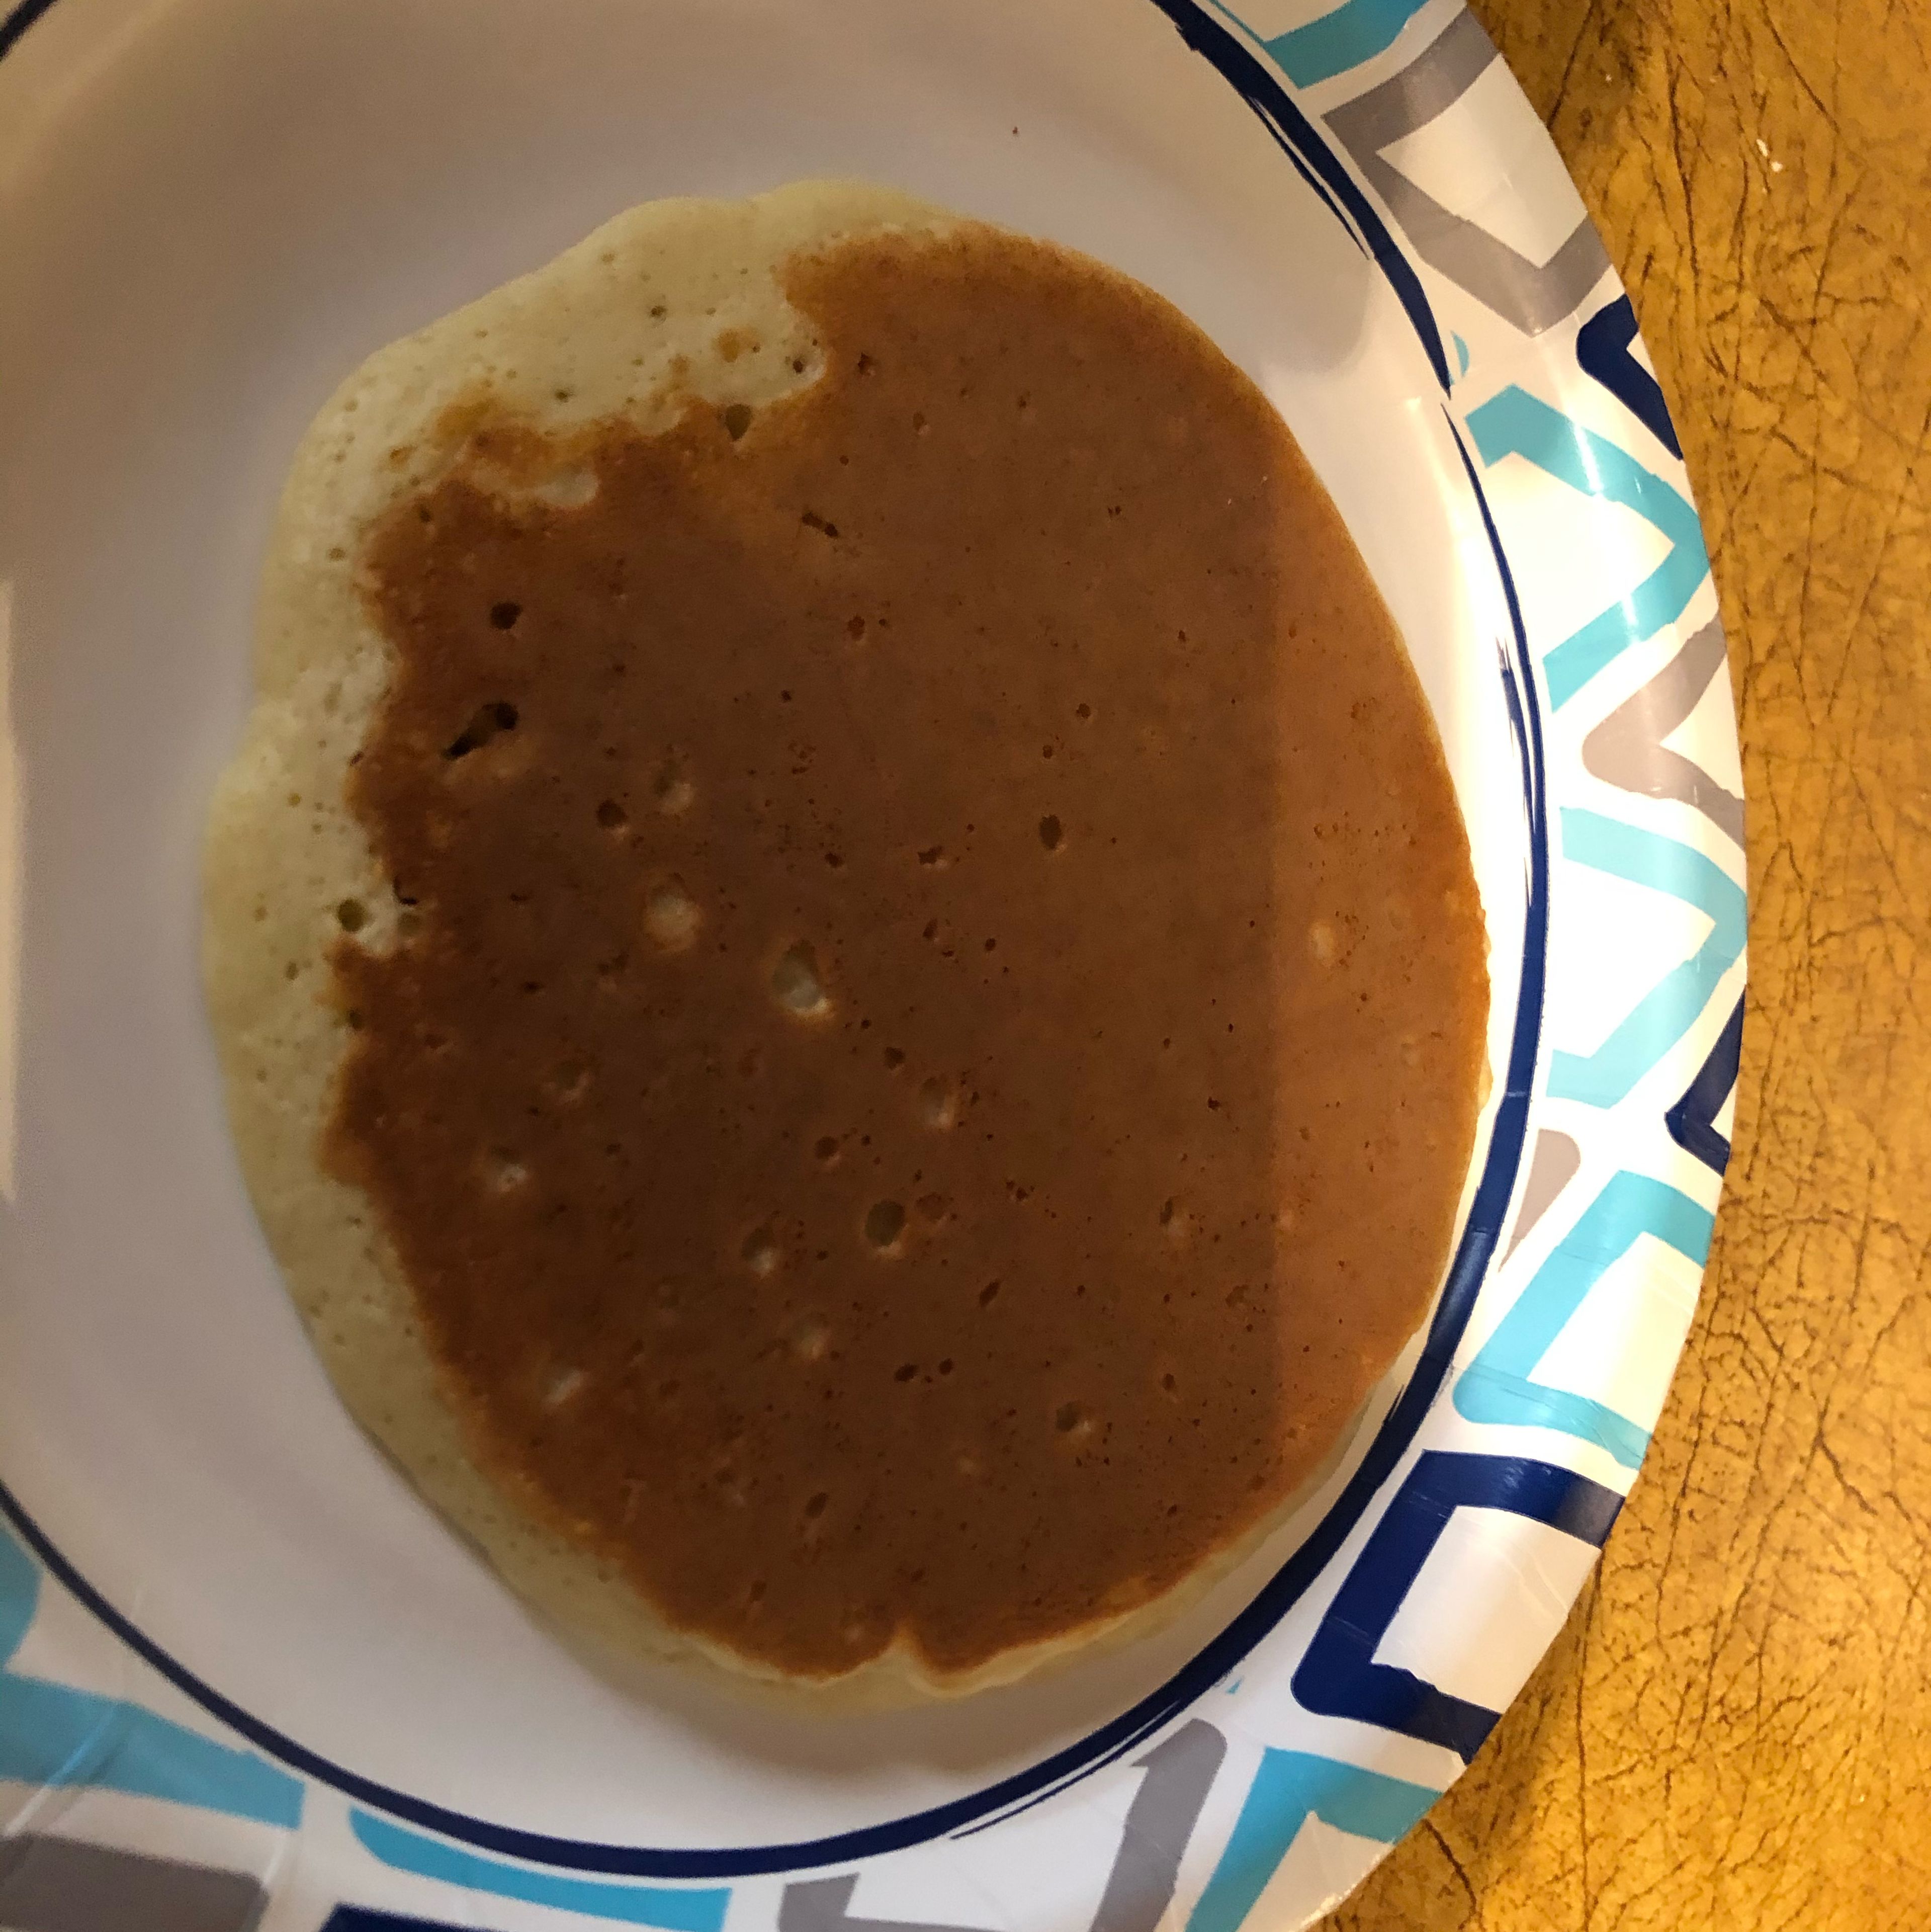 Easy pancakes